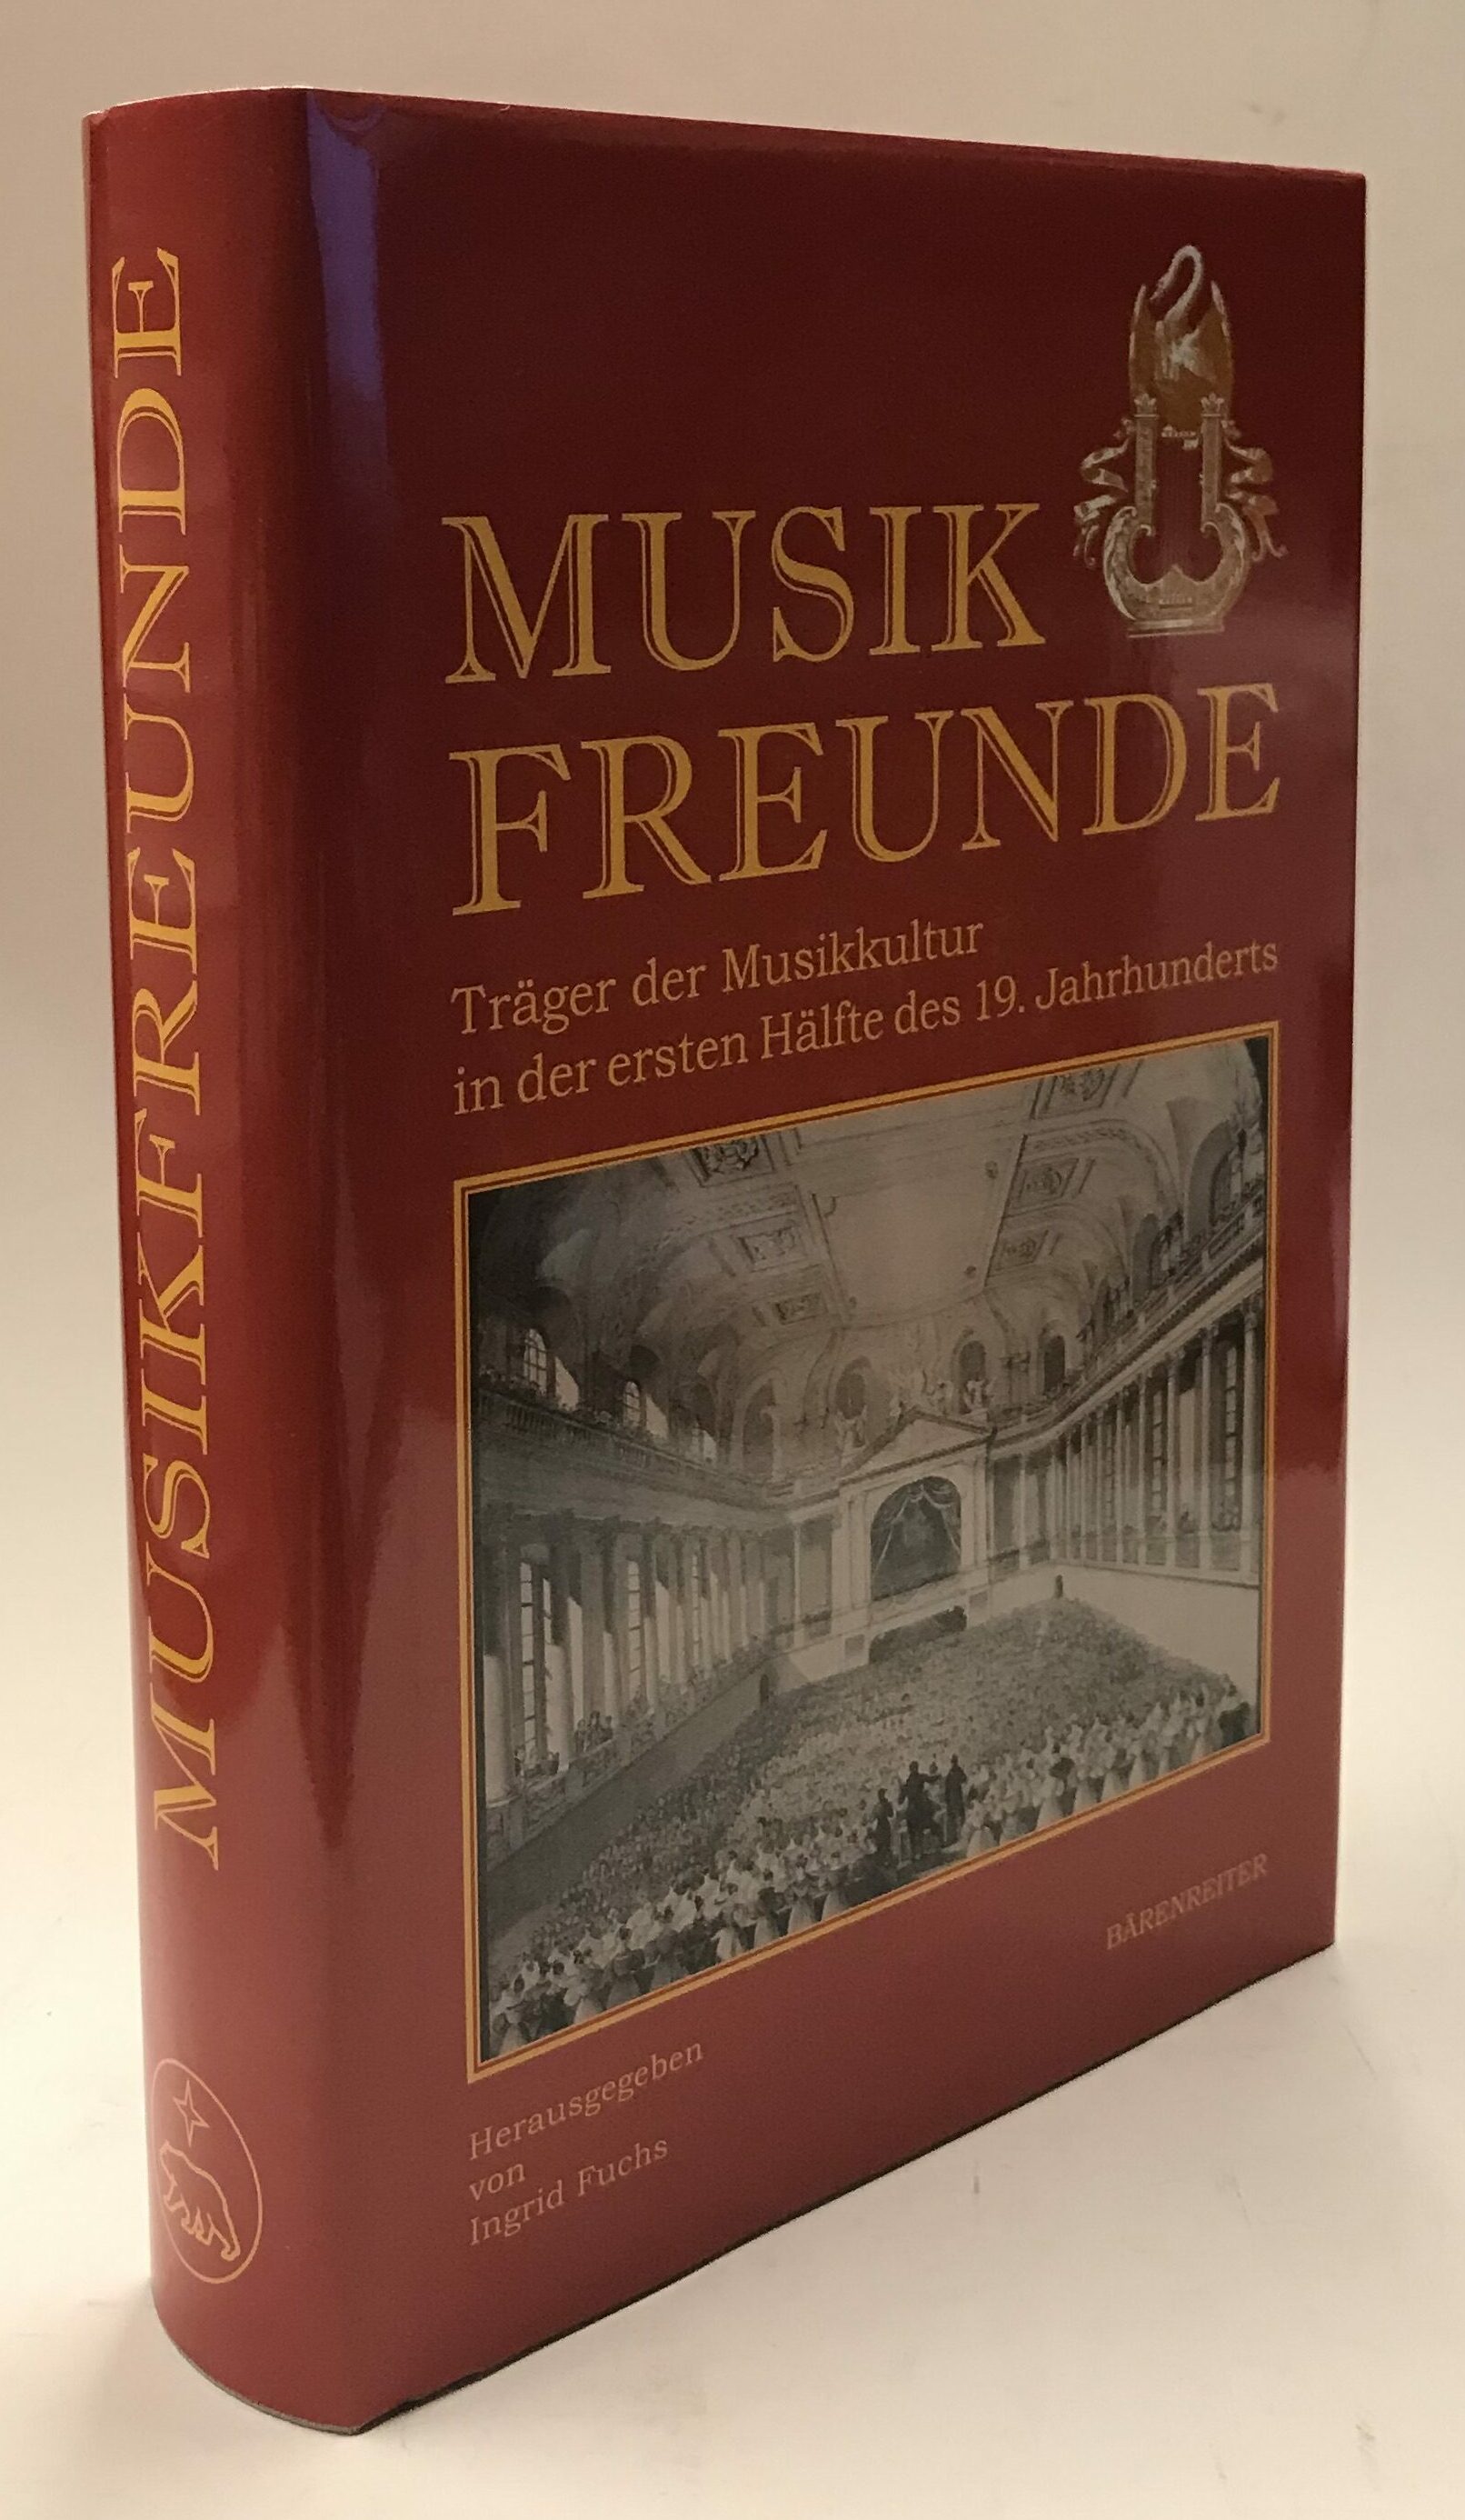 Musikfreunde. Träger der Musikkultur in der ersten Hälfte des 19. Jahrhunderts. - Fuchs, Ingrid (Hrg.)